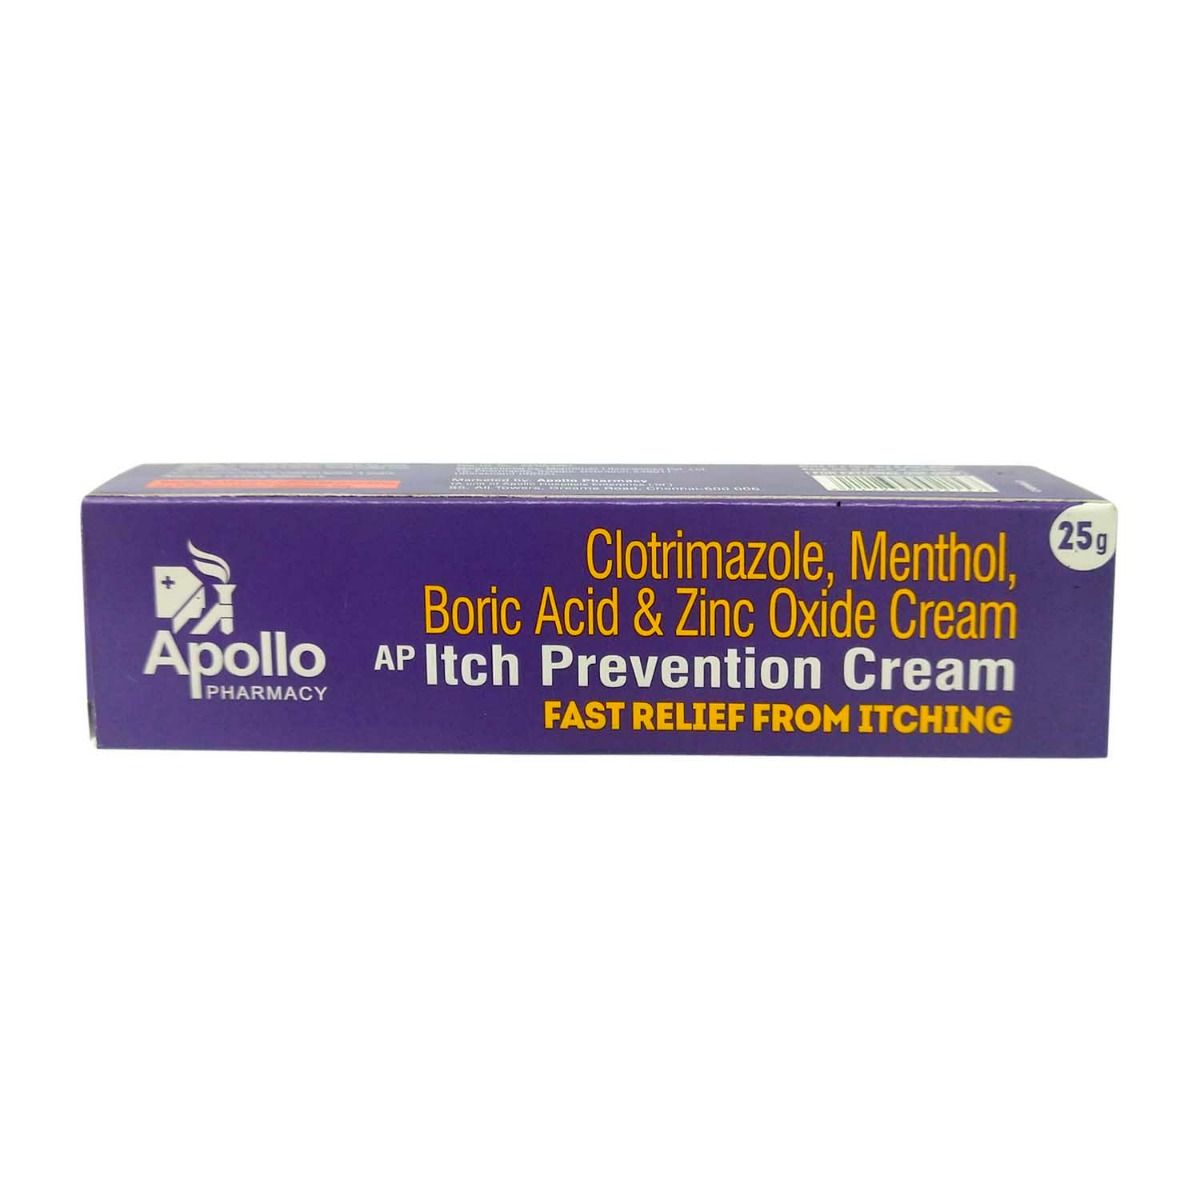 Buy Apollo Pharmacy Itch Prevention Cream, 25 gm Online